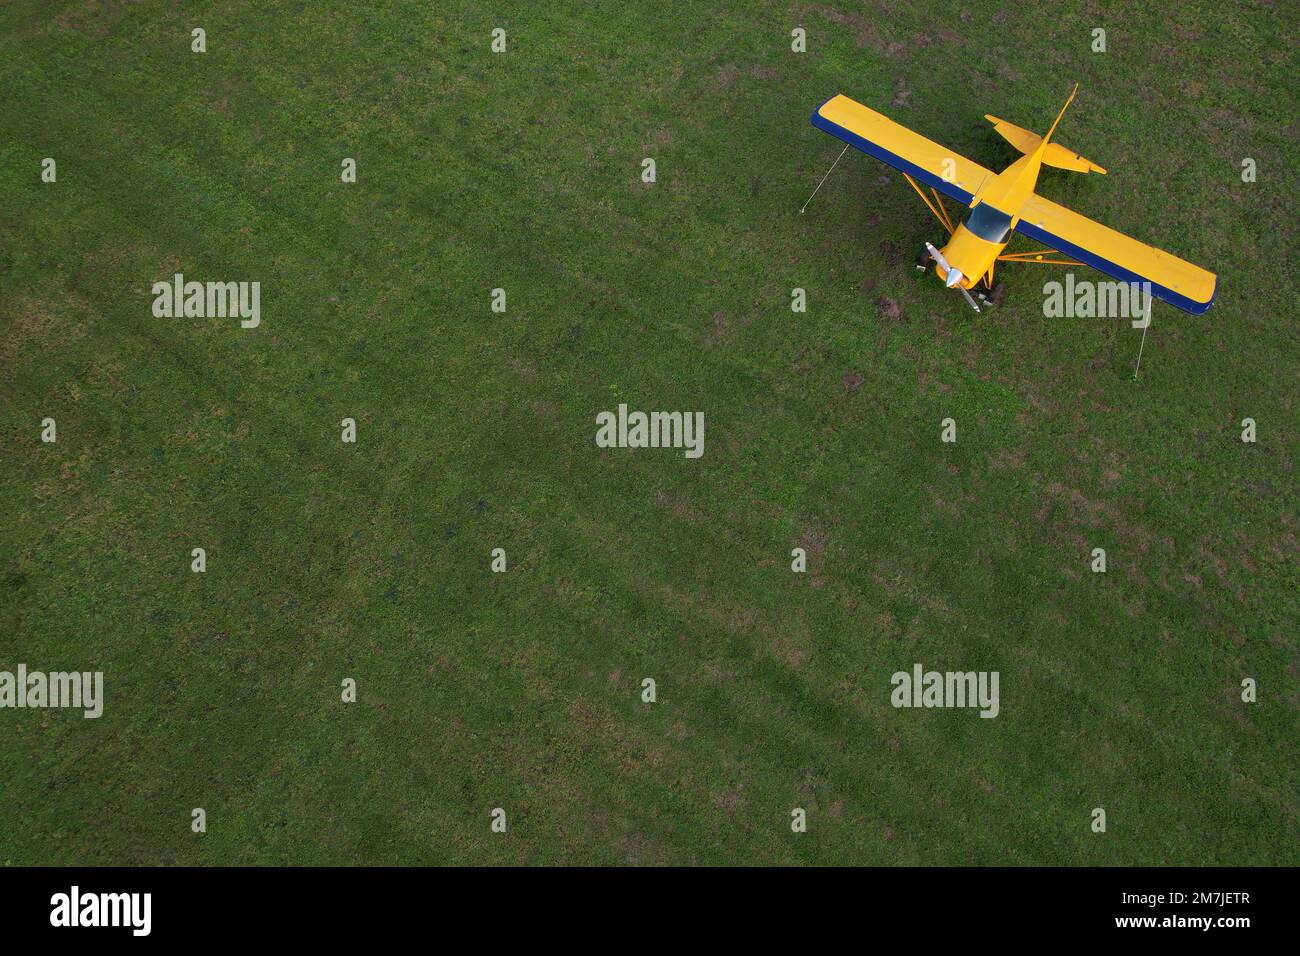 piccolo aereo giallo utilizzato per brevi viaggi visti dall'alto parcheggiato su un campo verde Foto Stock